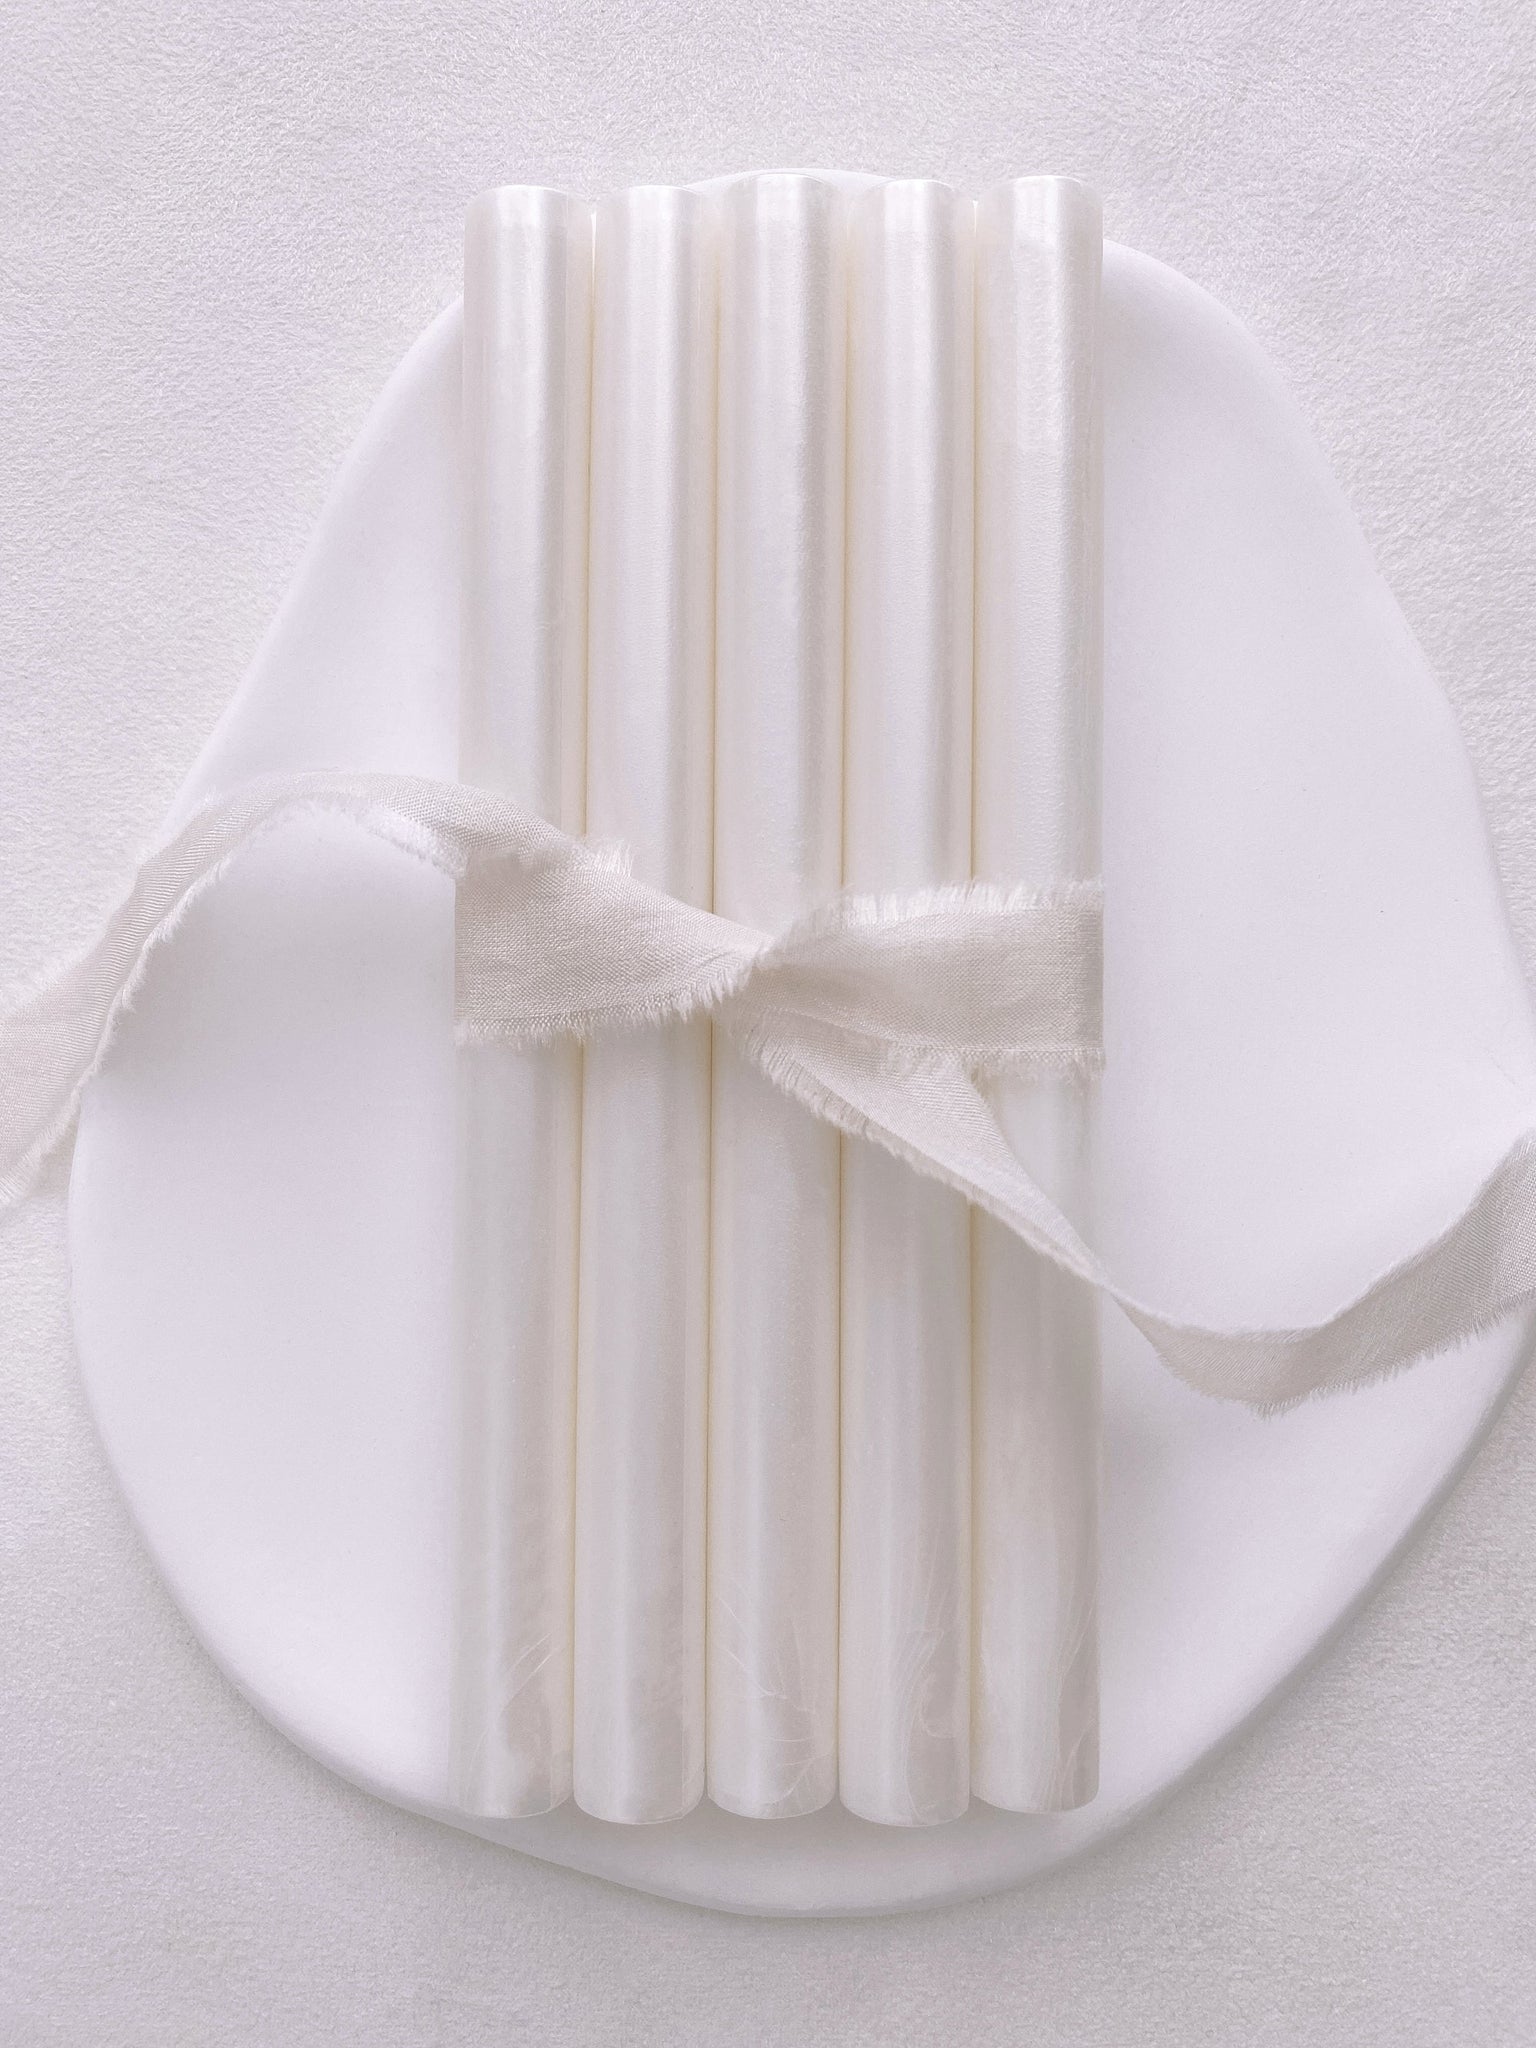 Wax Sticks | White Pearl